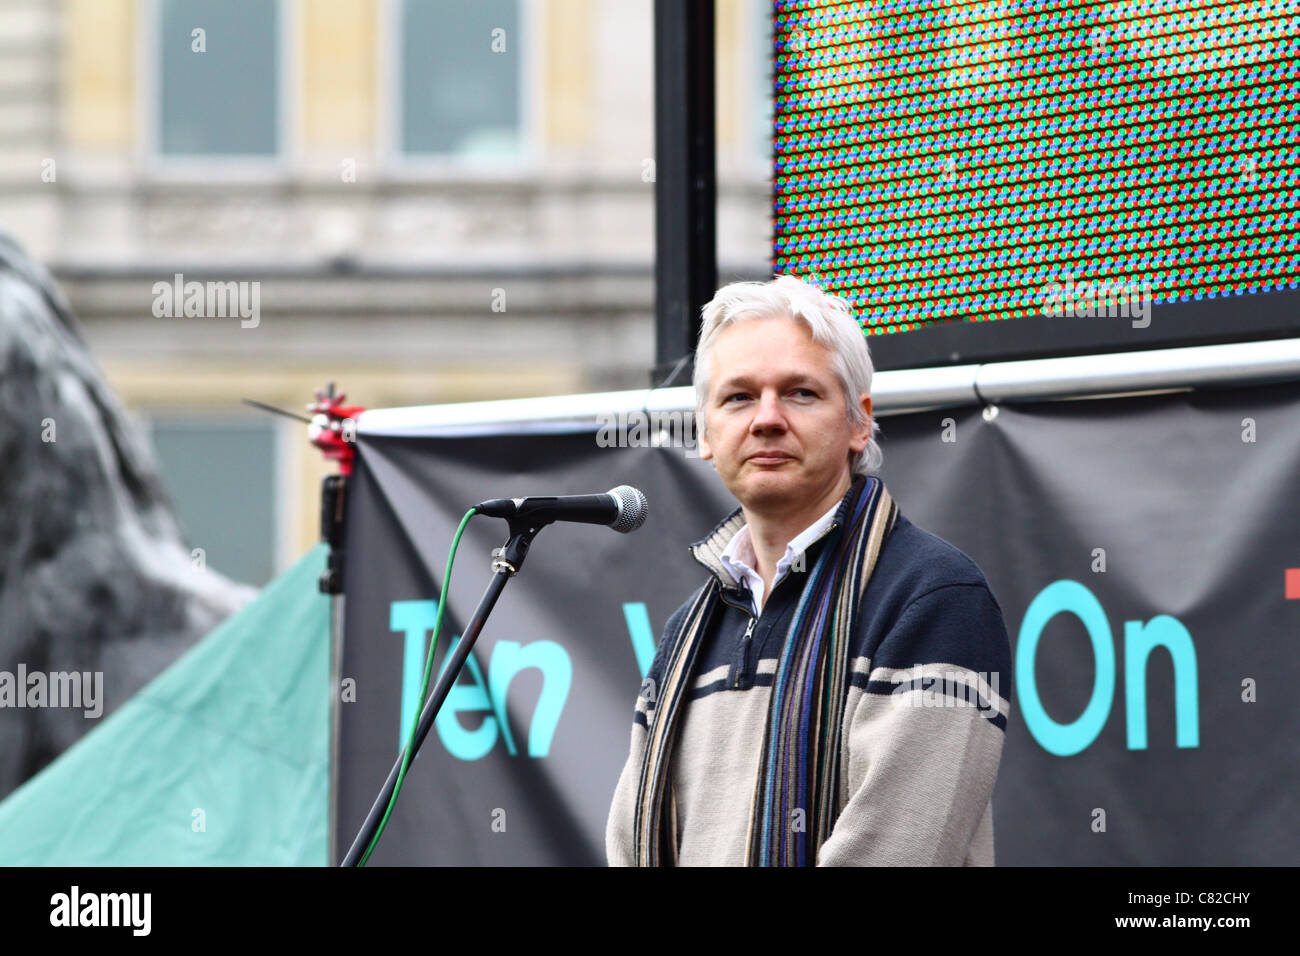 Julian Assange, founder of Wikileaks, addresses a crowd in London's Trafalgar Square. Stock Photo